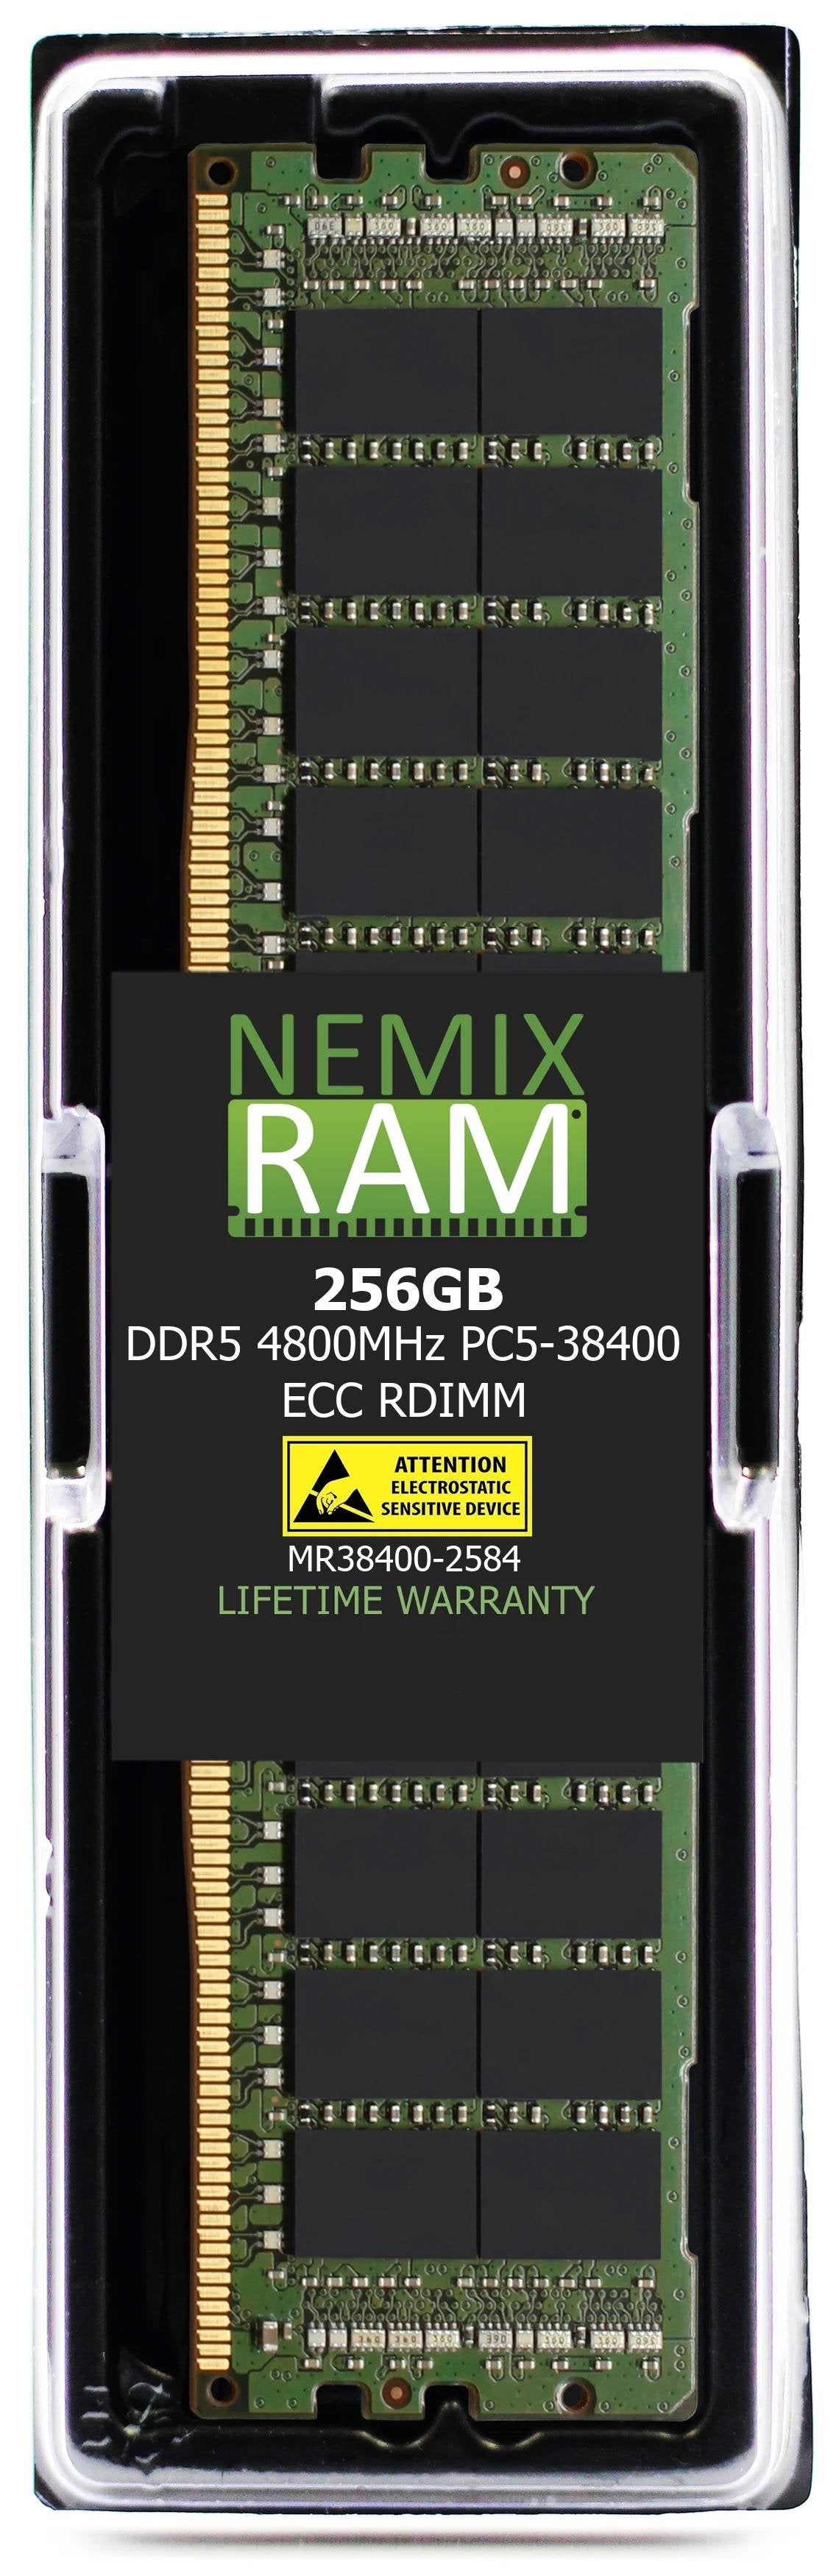 NEMIX RAM 256GB DDR5 4800MHz PC5-38400 ECC RDIMM Compatible with Hynix HMCCBGR8M4R4C-EE